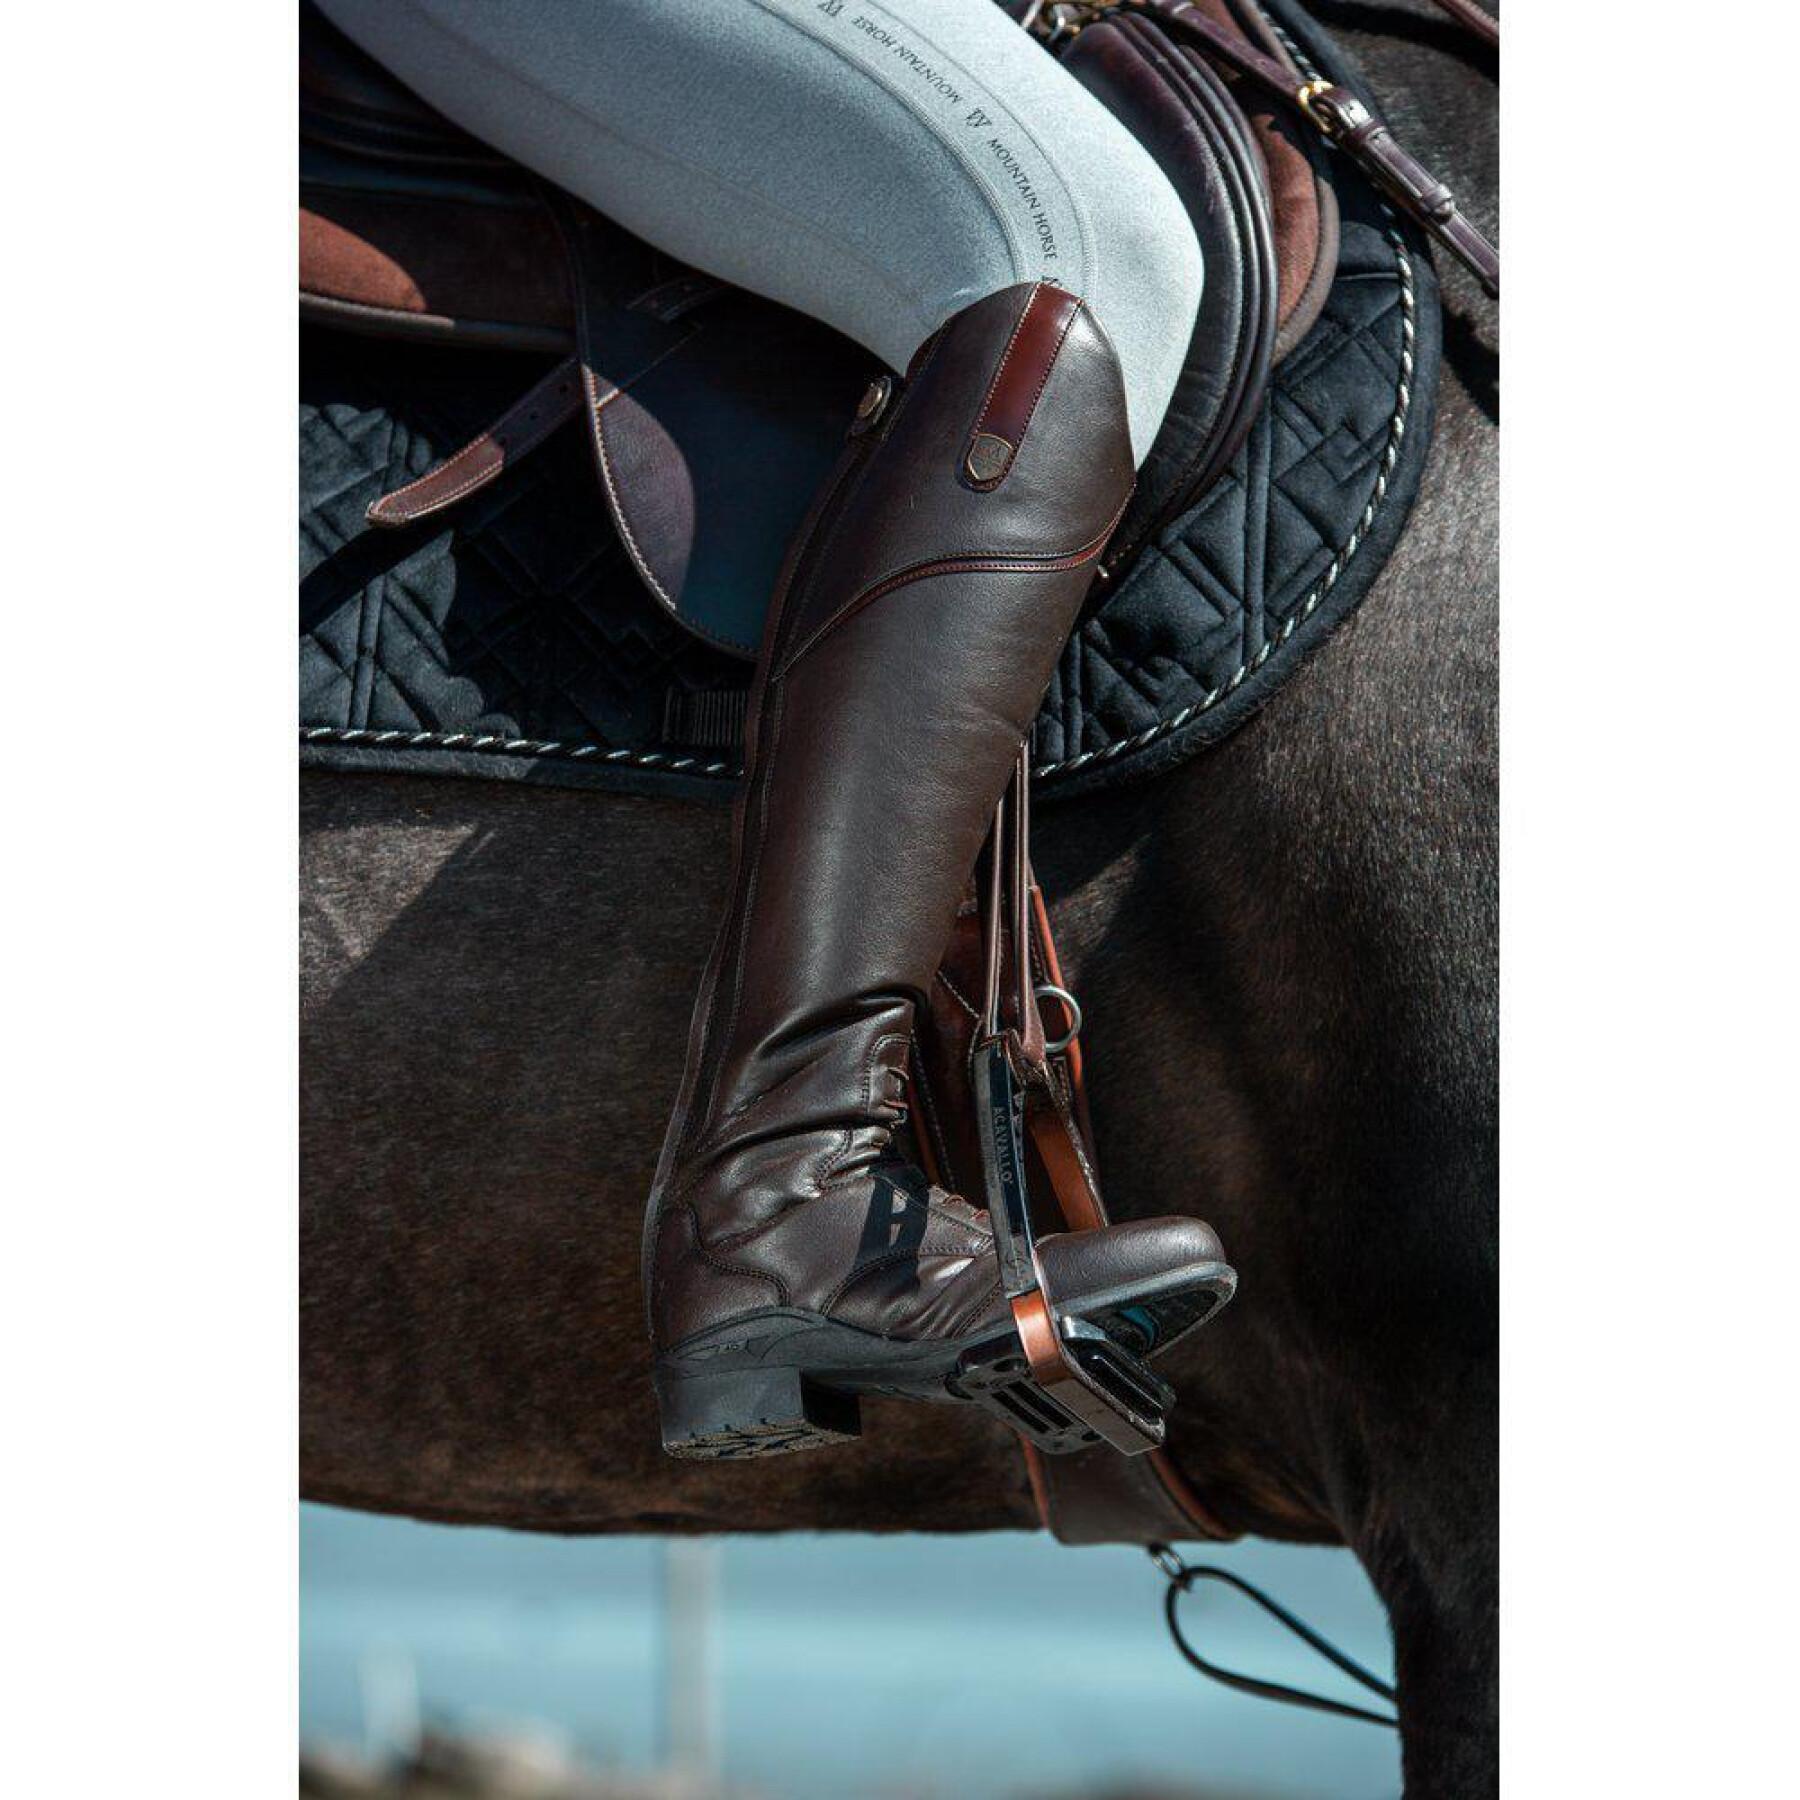 Botas equitación para mujer Mountain Horse Veganza Regular-Narrow